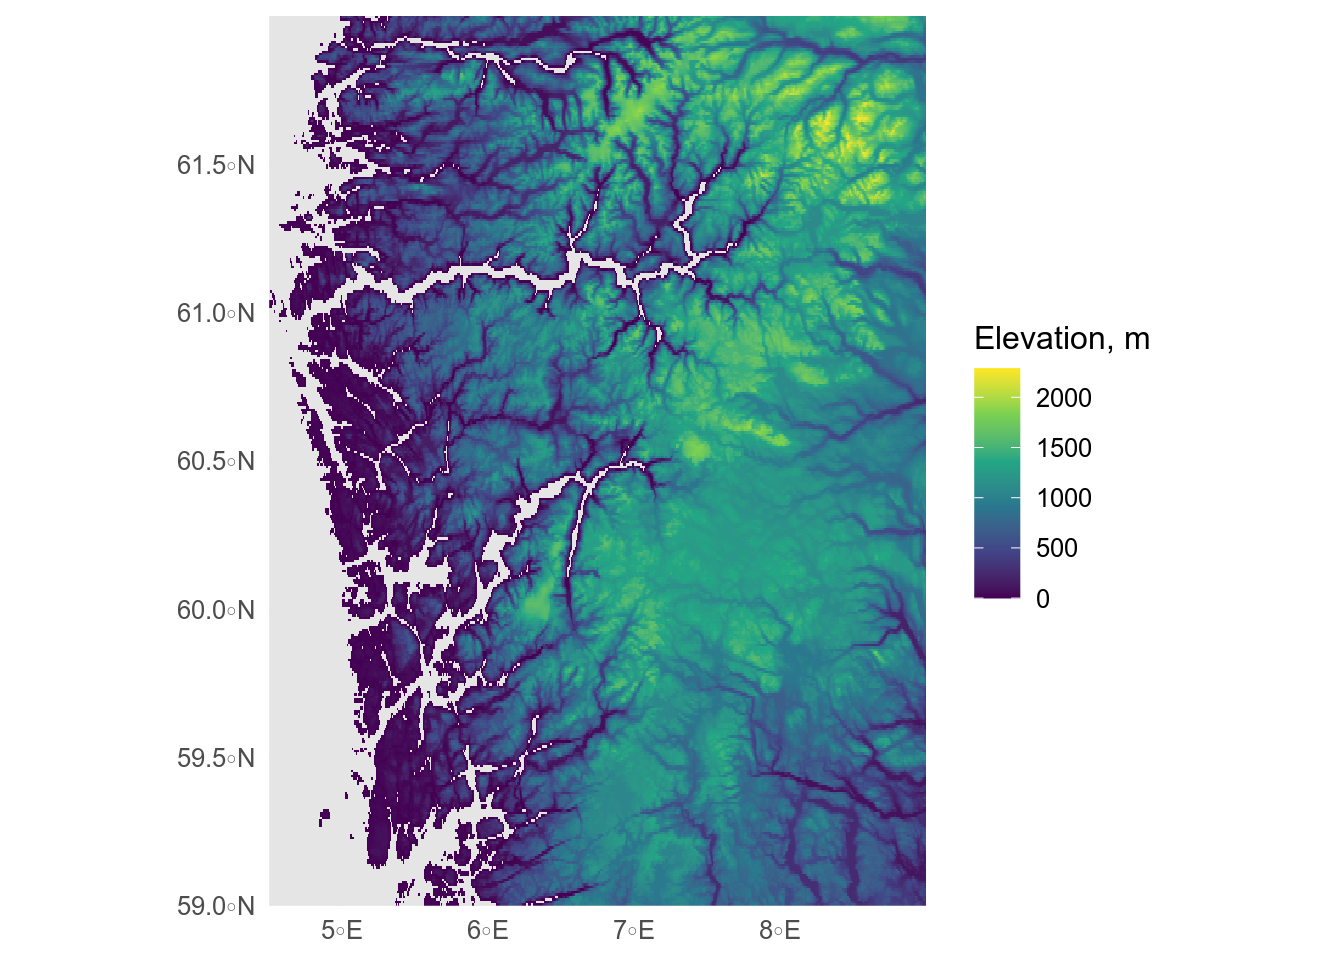 Raster map showing digital elevation model of vestland, cropped at sealevel.